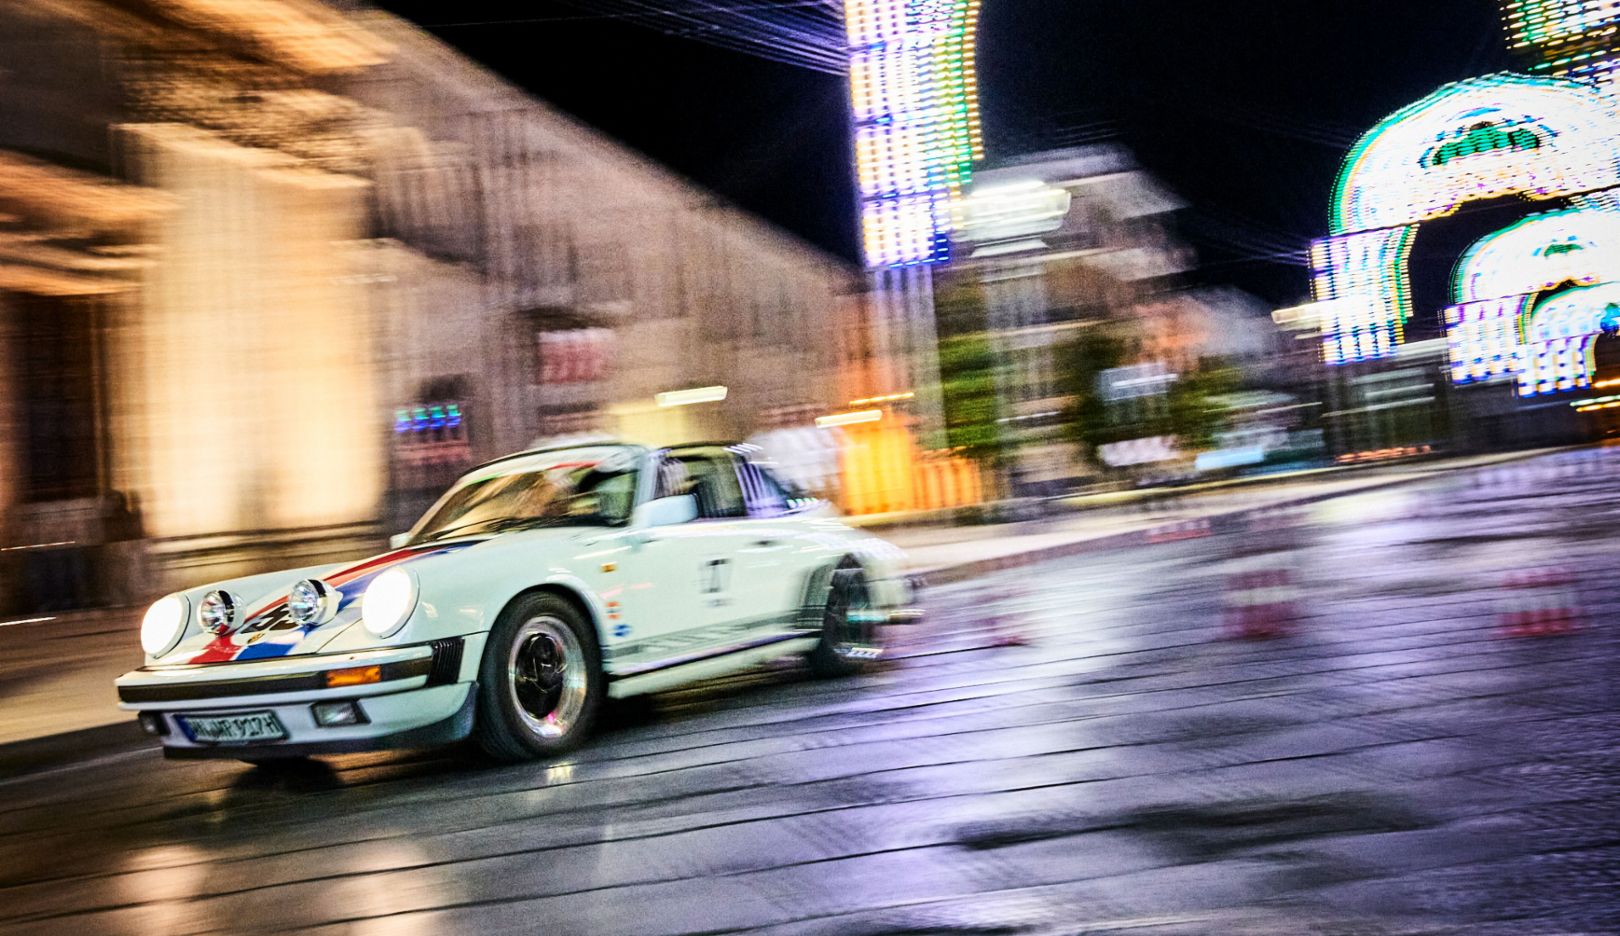 Highlight notturno: la 911 Carrera Targa, anno di costruzione 1986, nella sua prova di regolarità per le vie di Manduria illuminate a festa.